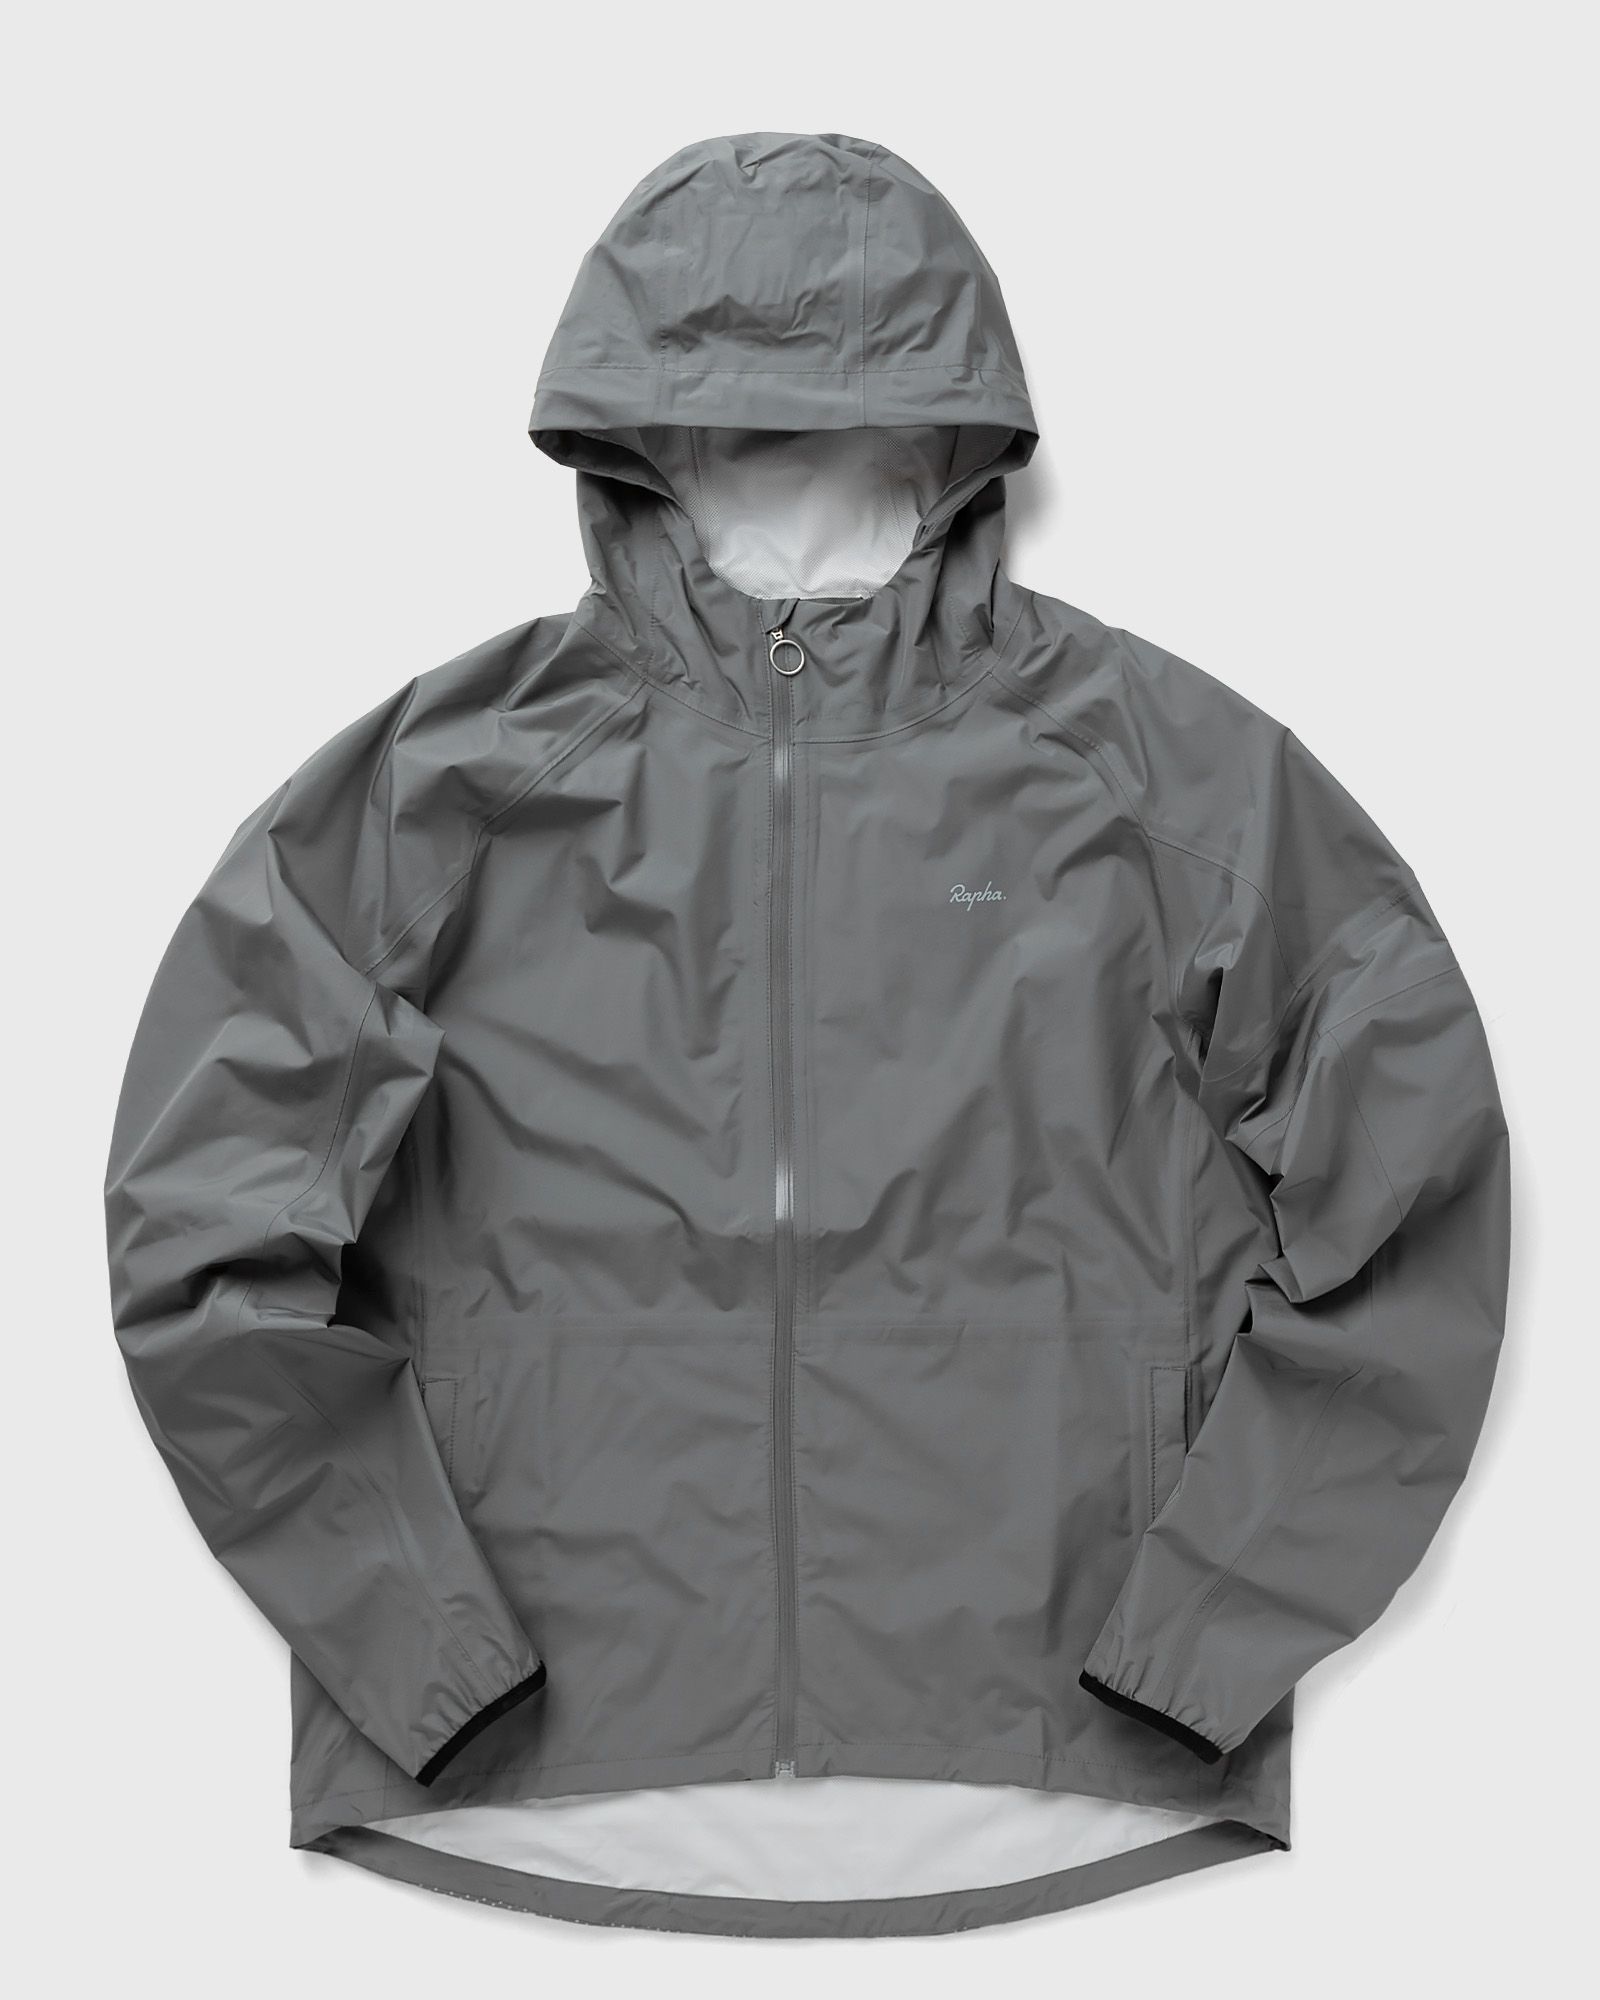 Rapha - commuter jacket men windbreaker grey in größe:s